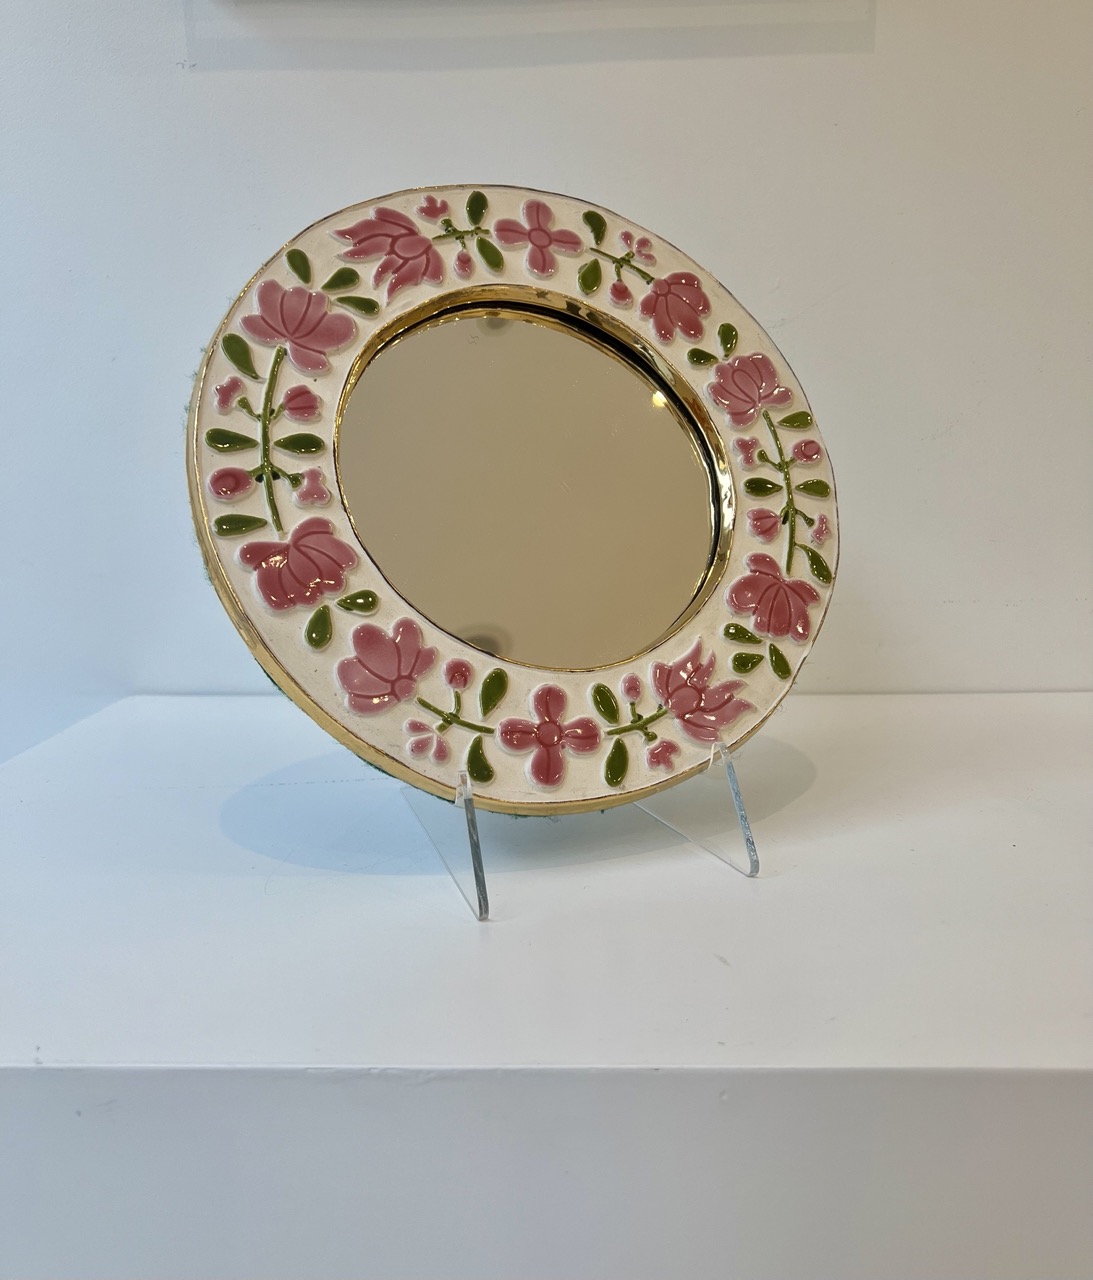 Ein graziler blumiger Spiegel von Mithé Espelt, betitelt Romantique. Man sieht die feinen Glasuren von Mithé Espelt und die Spuren ihrer Hand am vergoldeten Rahmen.